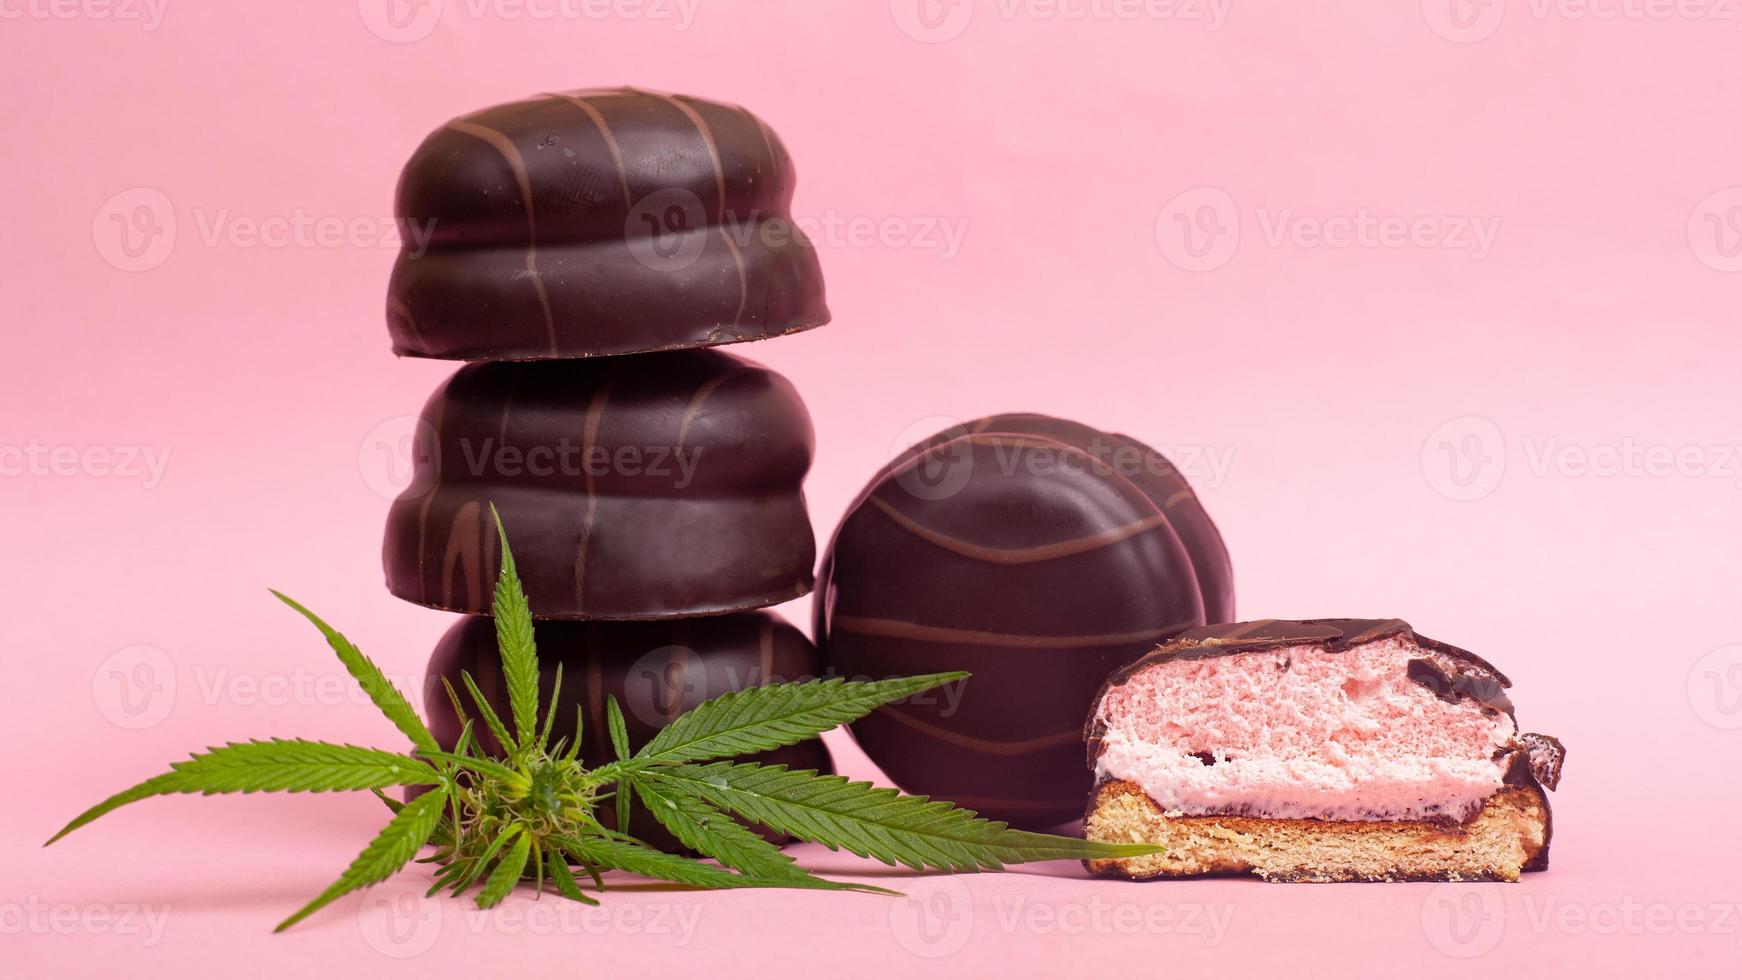 biscoito de chocolate com extrato de thc e cbd em fundo rosa foto